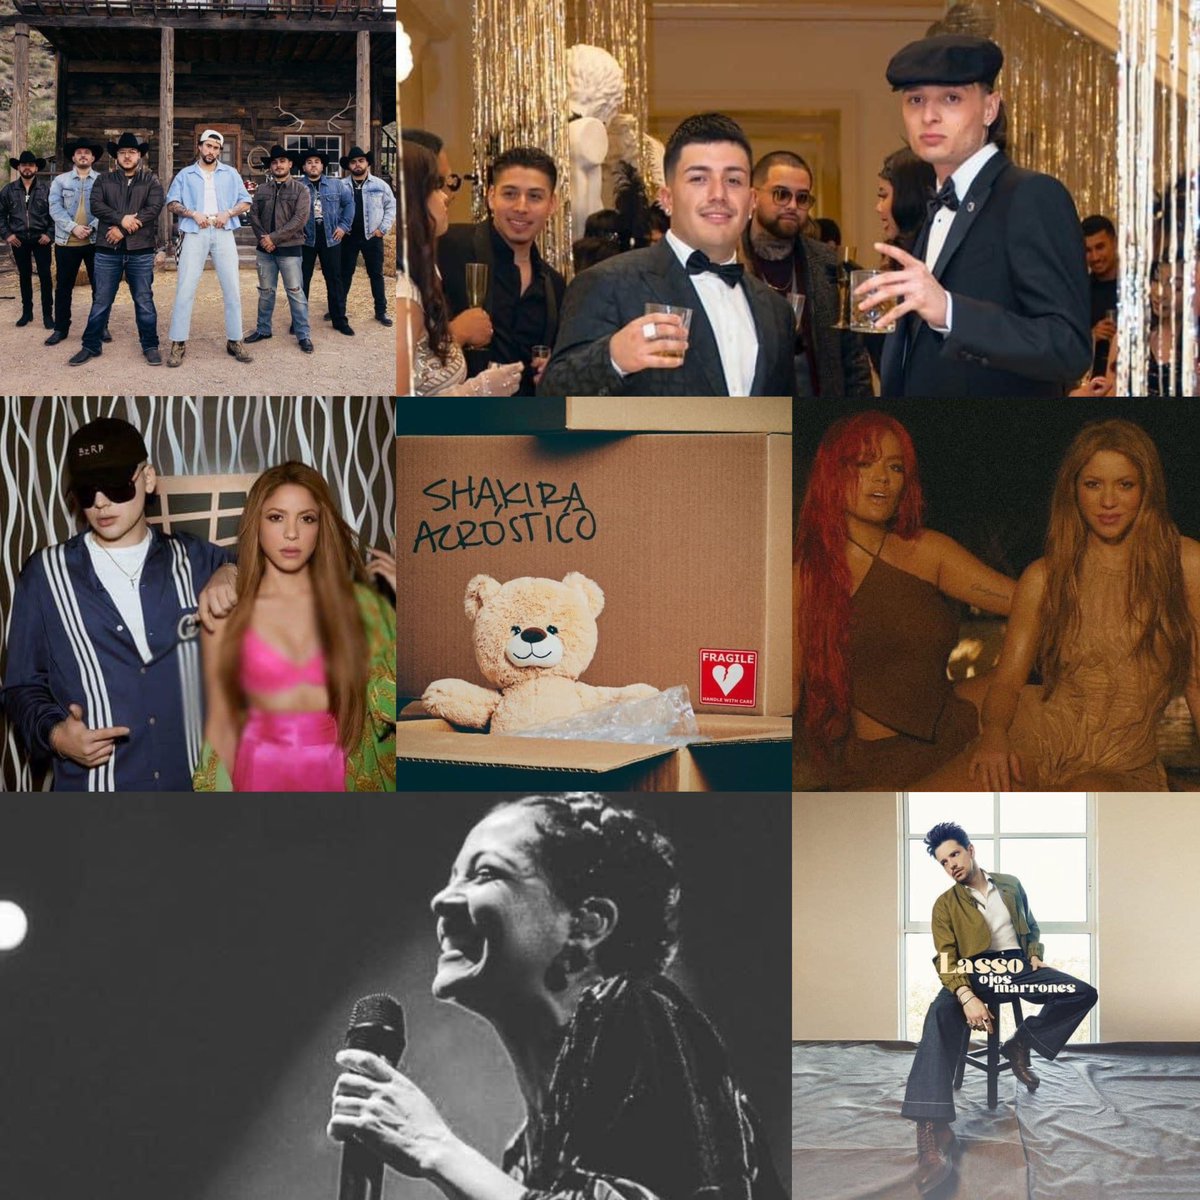 Los nominados  para canción del año en los Latín Grammy's 2023 son 

'Un x100to' de Grupo Frontera y Bad Bunny
'Shakira: Bizzarrap Music Session#53' Shakira y Bizarrap 
'Ella Baila Sola' Eslabón Armado y Peso Pluma
'Acróstico ' Shakira 
'TQG' Karol G y Shakira
'De todas las